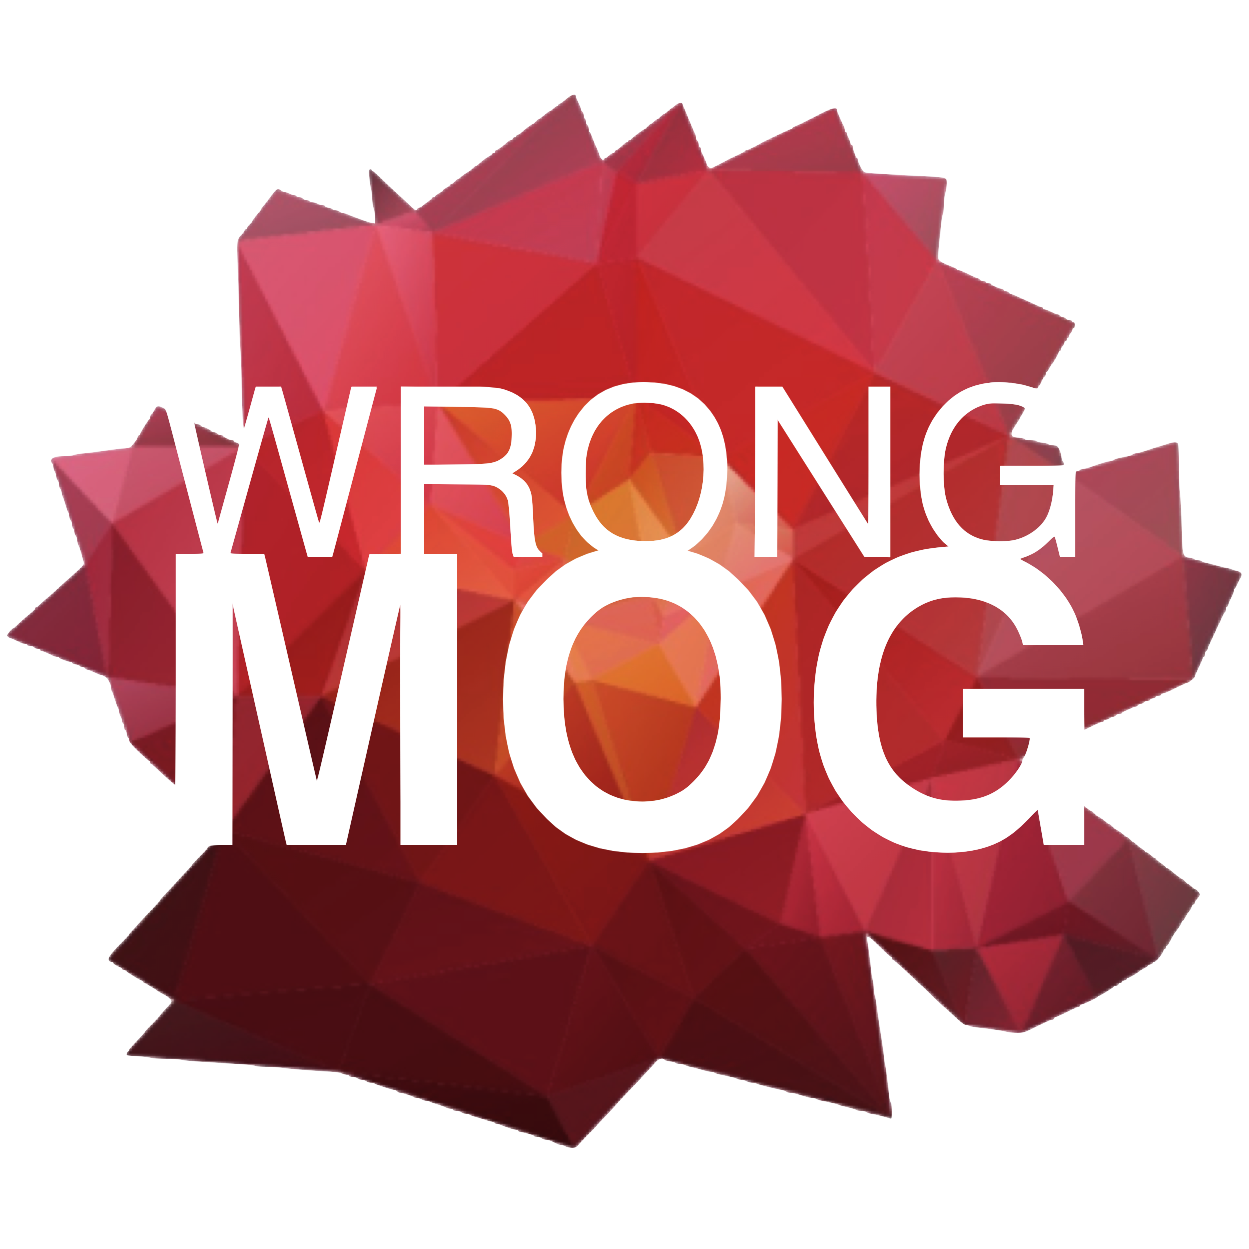 Wrongmog